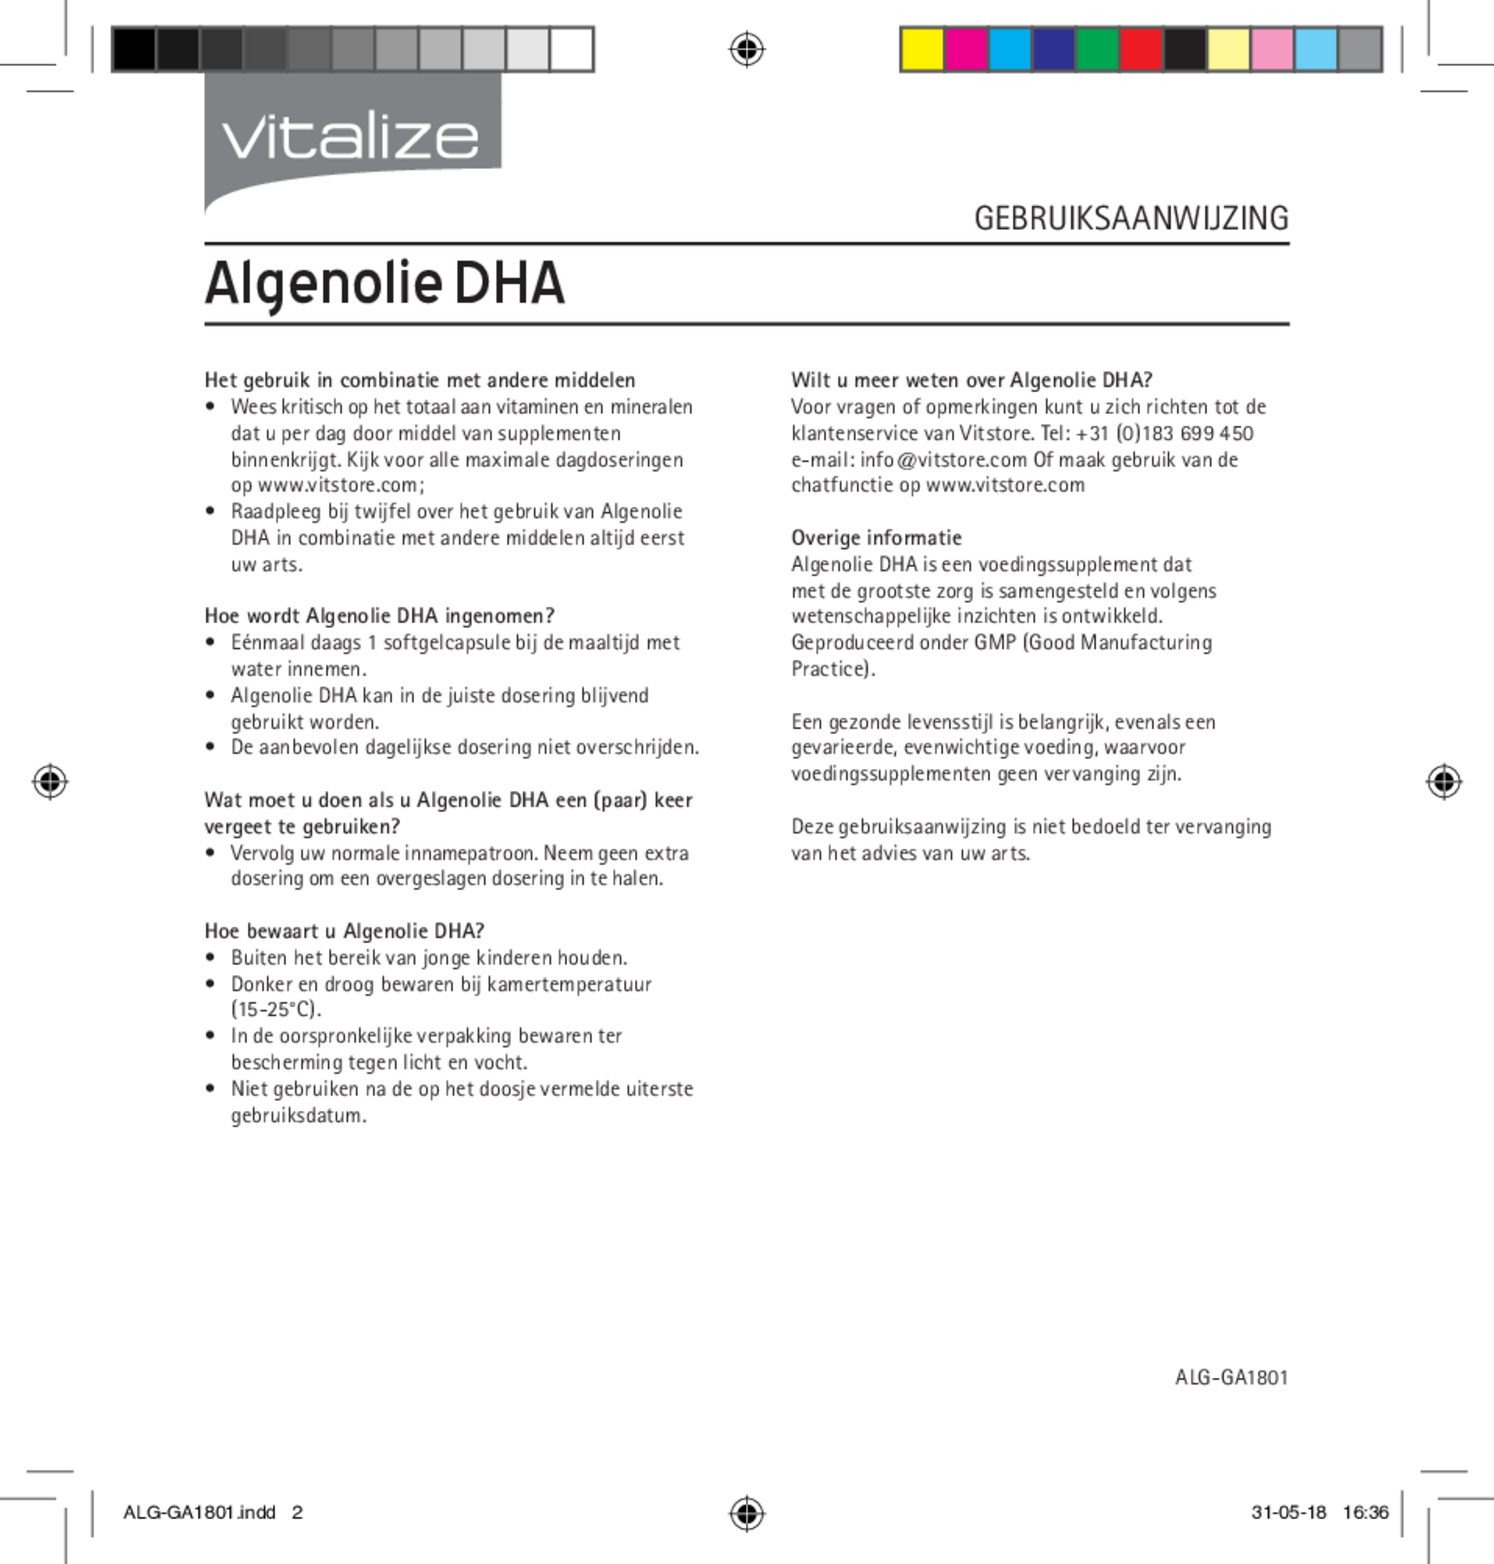 Vegan Omega 3 Algenolie DHA Capsules afbeelding van document #2, gebruiksaanwijzing